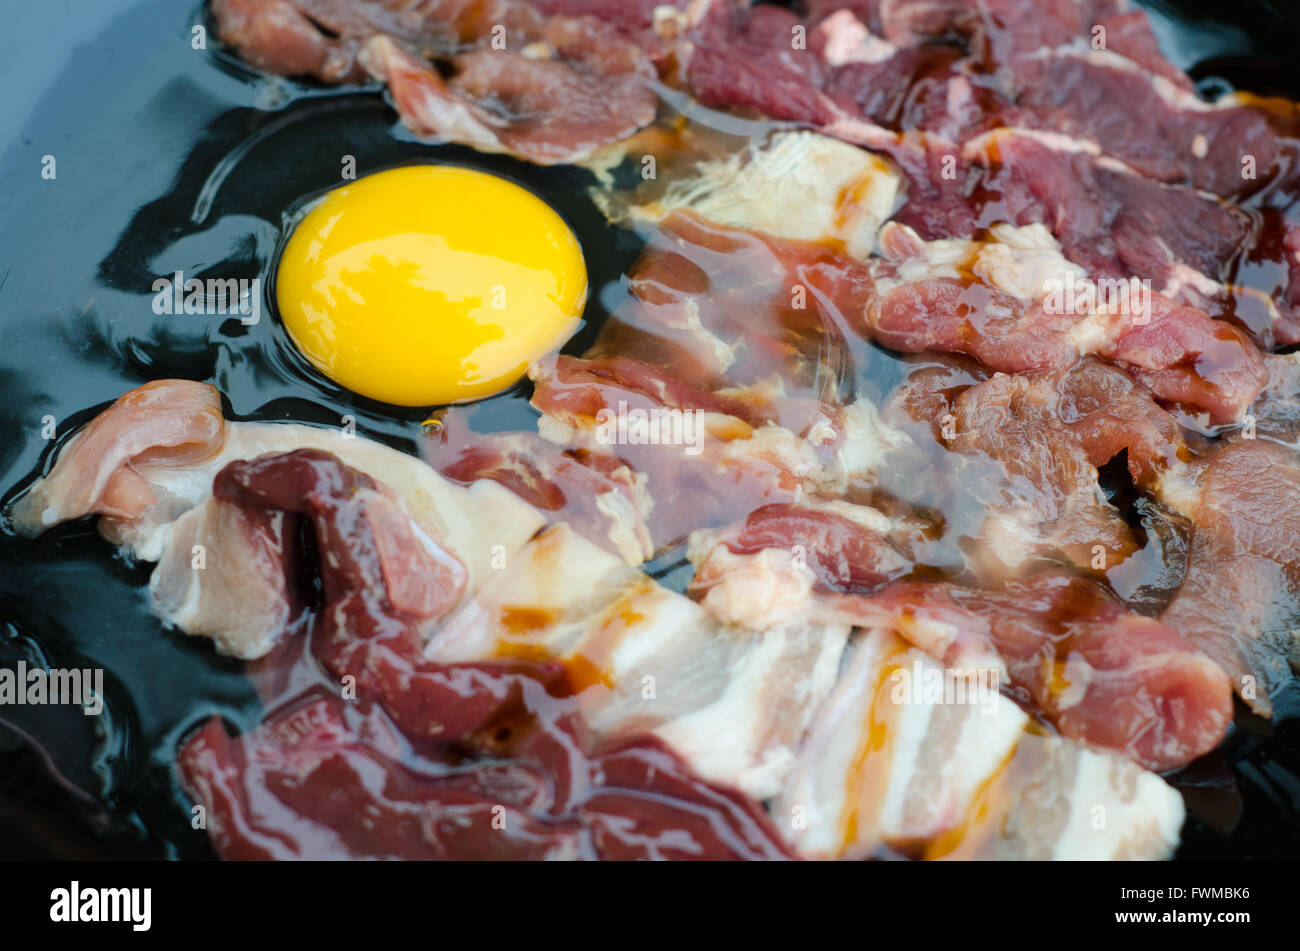 Couper le porc et le boeuf , style barbecue coréen Banque D'Images